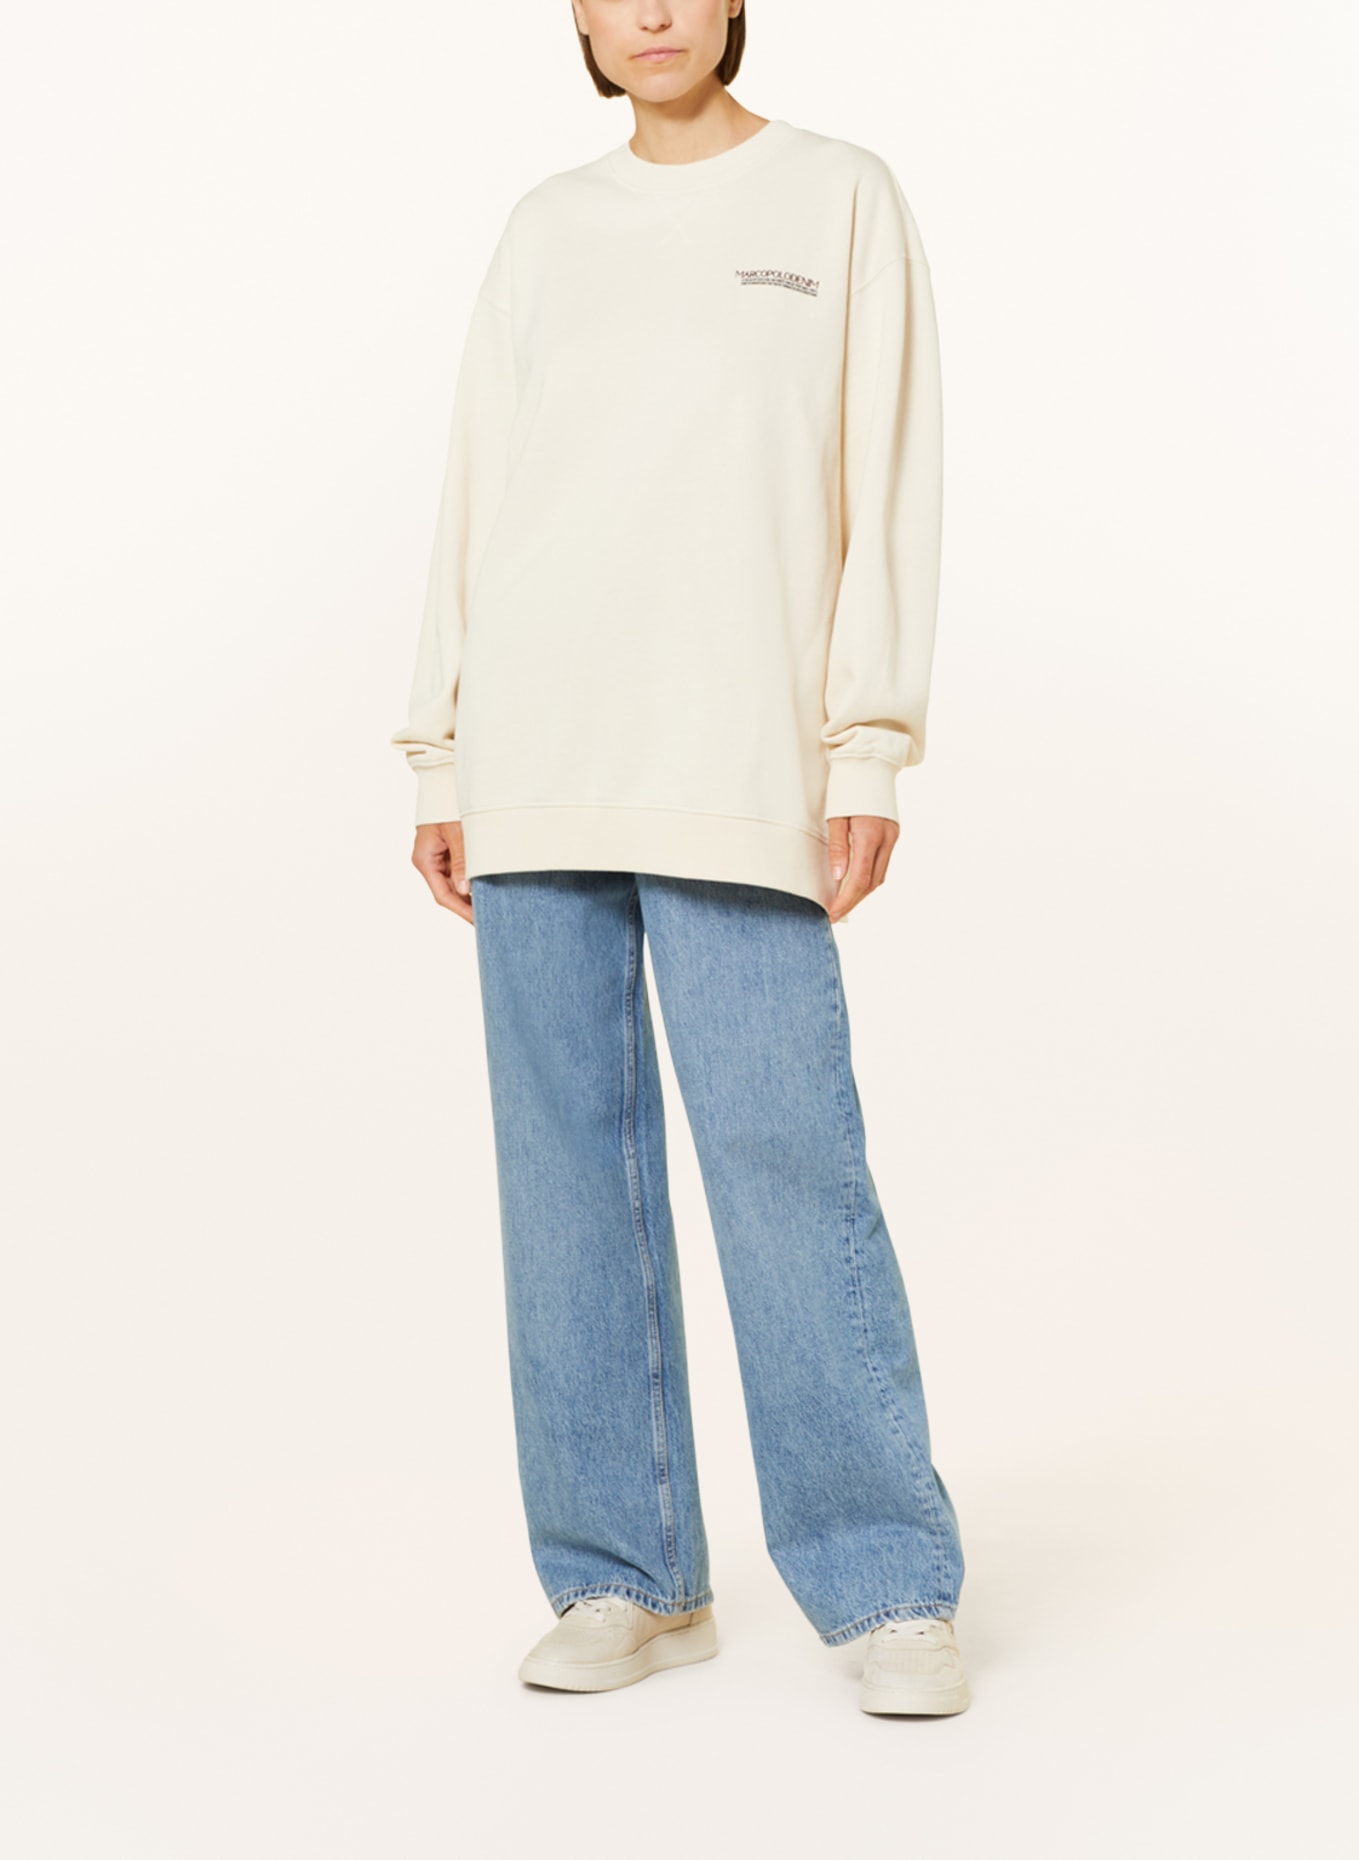 Marc O'Polo DENIM Oversized sweatshirt, Color: 121 white blush (Image 3)